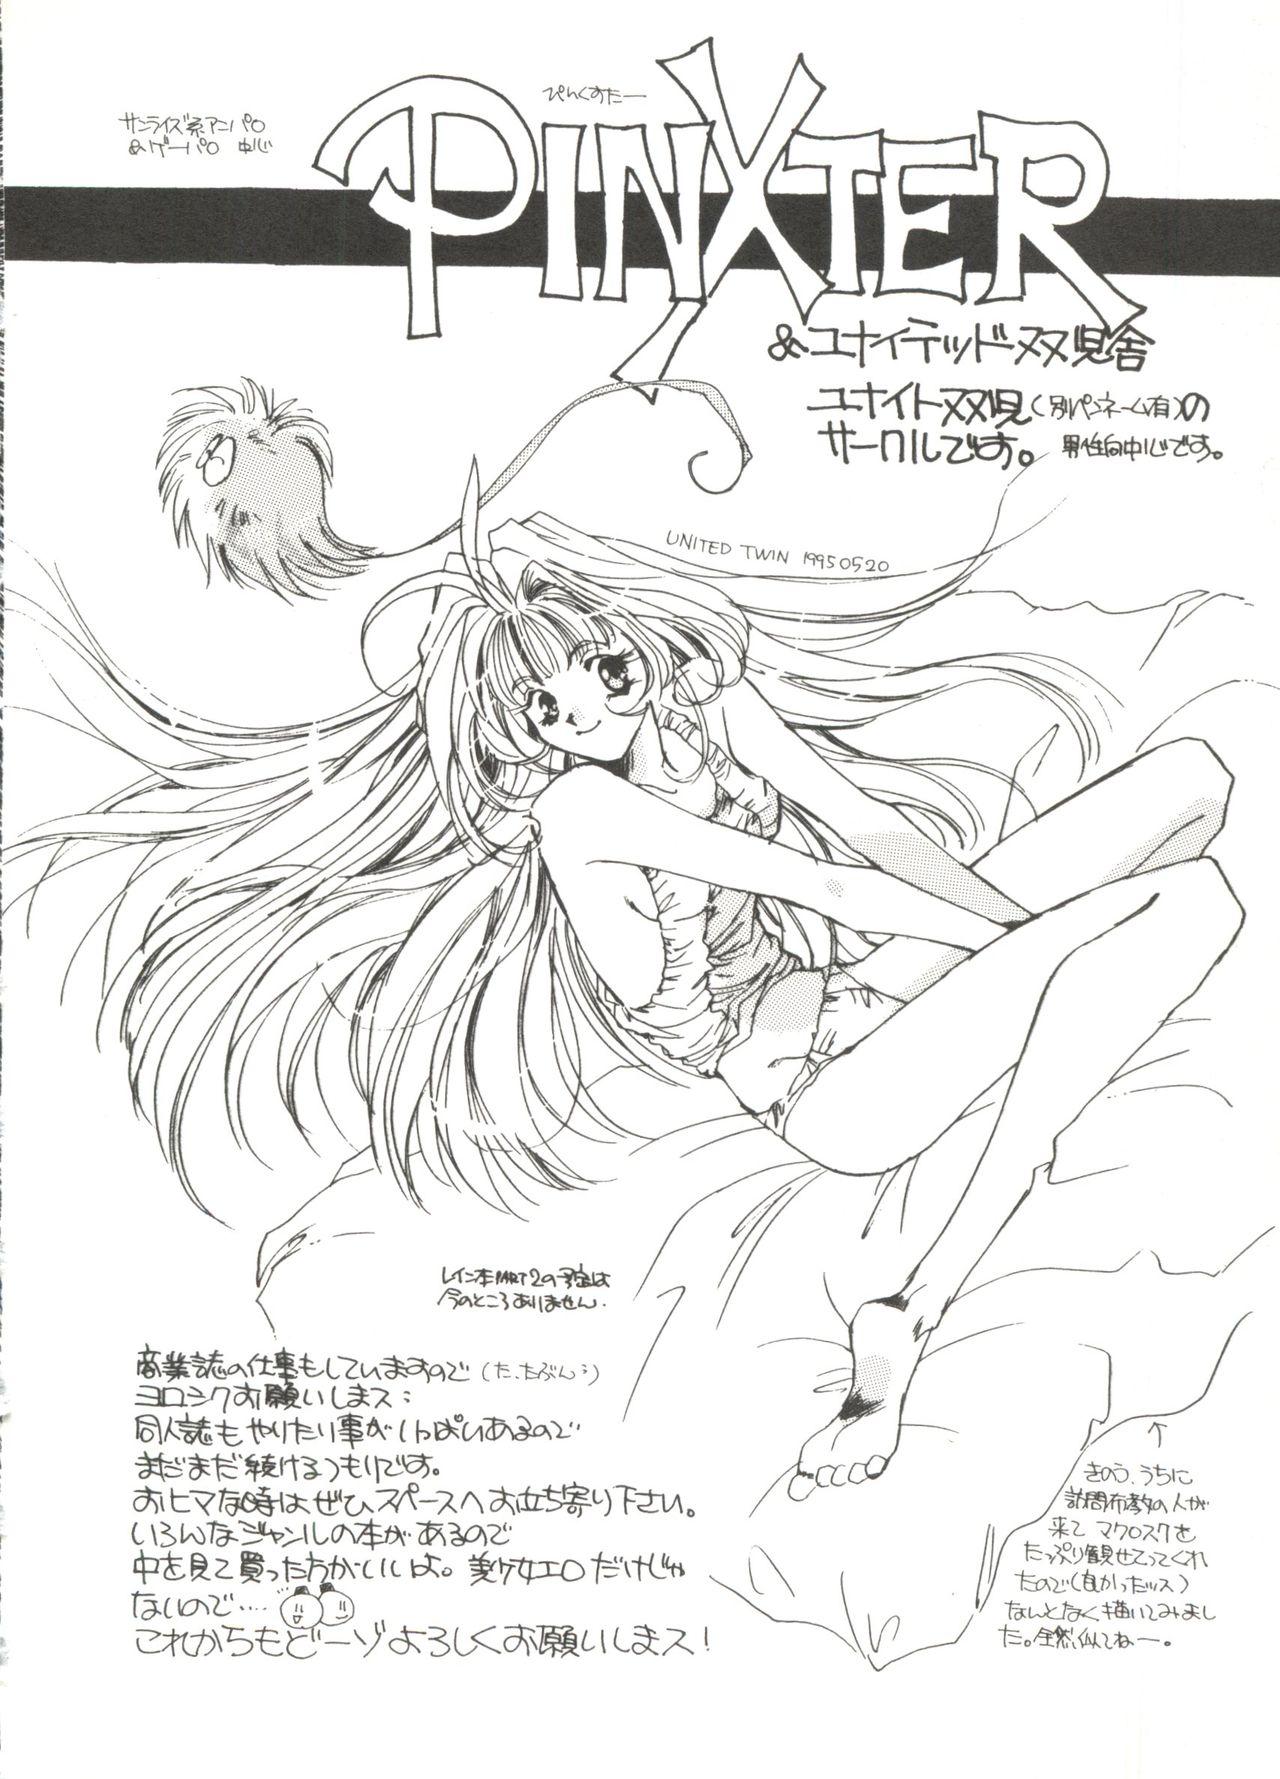 Bishoujo Doujinshi Anthology 14 52